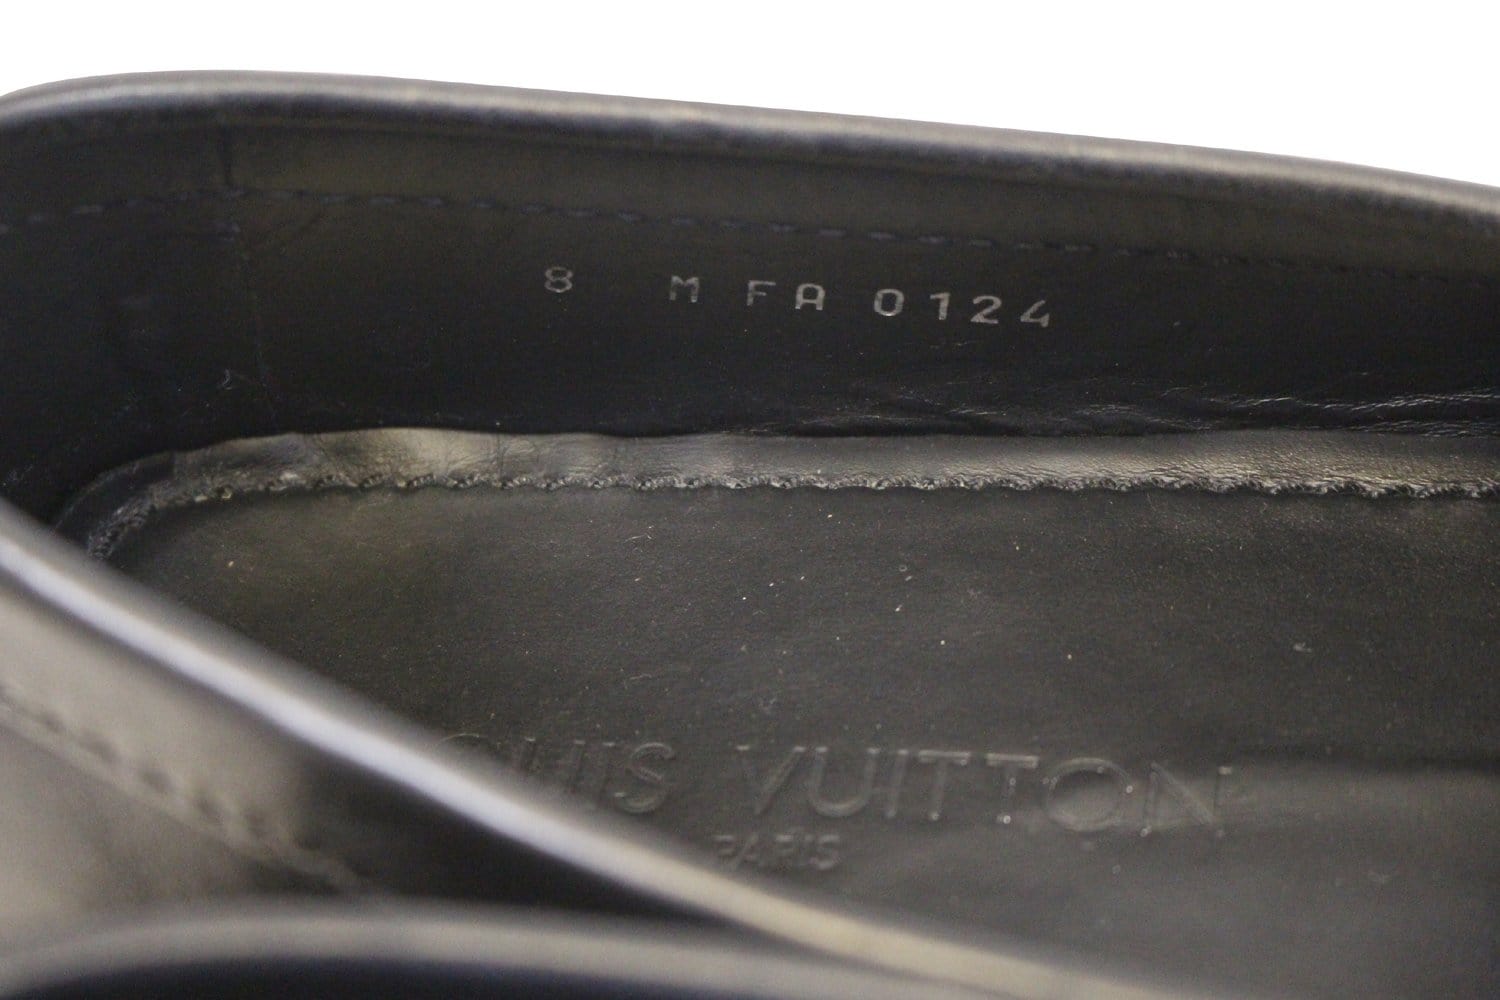 Louis Vuitton Men’s Leather Driving Shoes | Size US 8